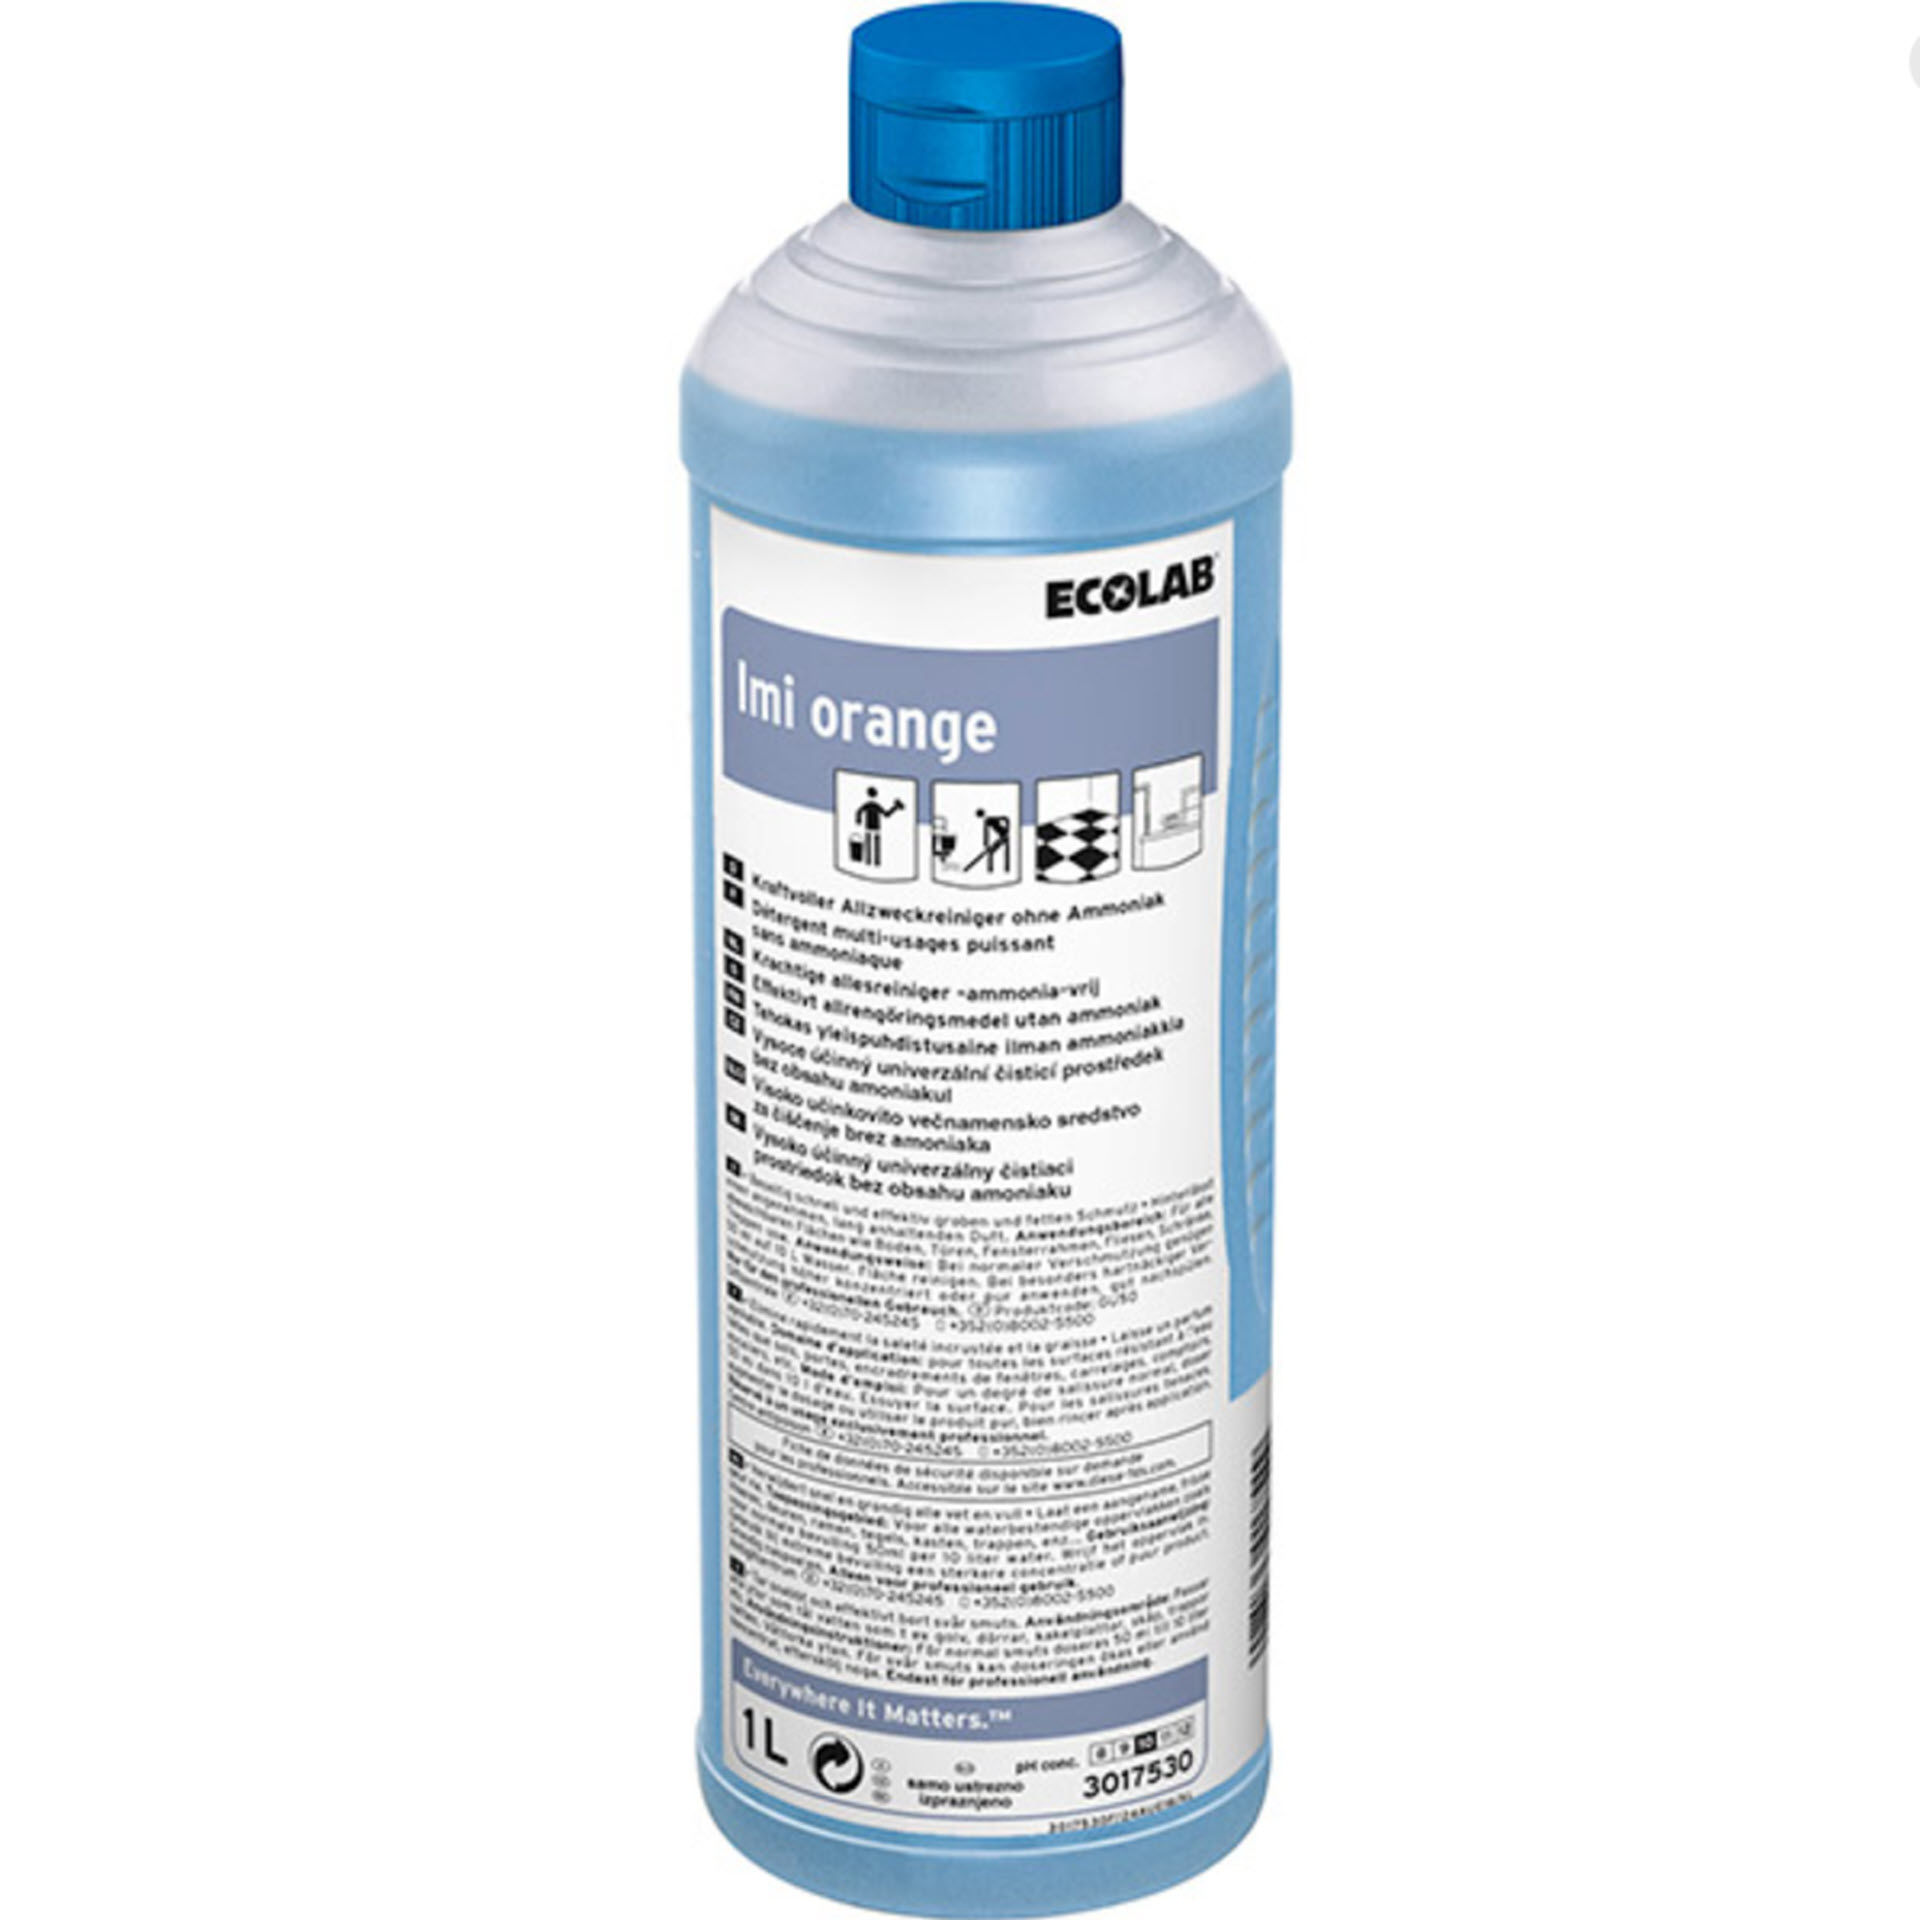 ECOLAB Imi® Orange Allzweckreiniger - 1 Liter Rundflasche